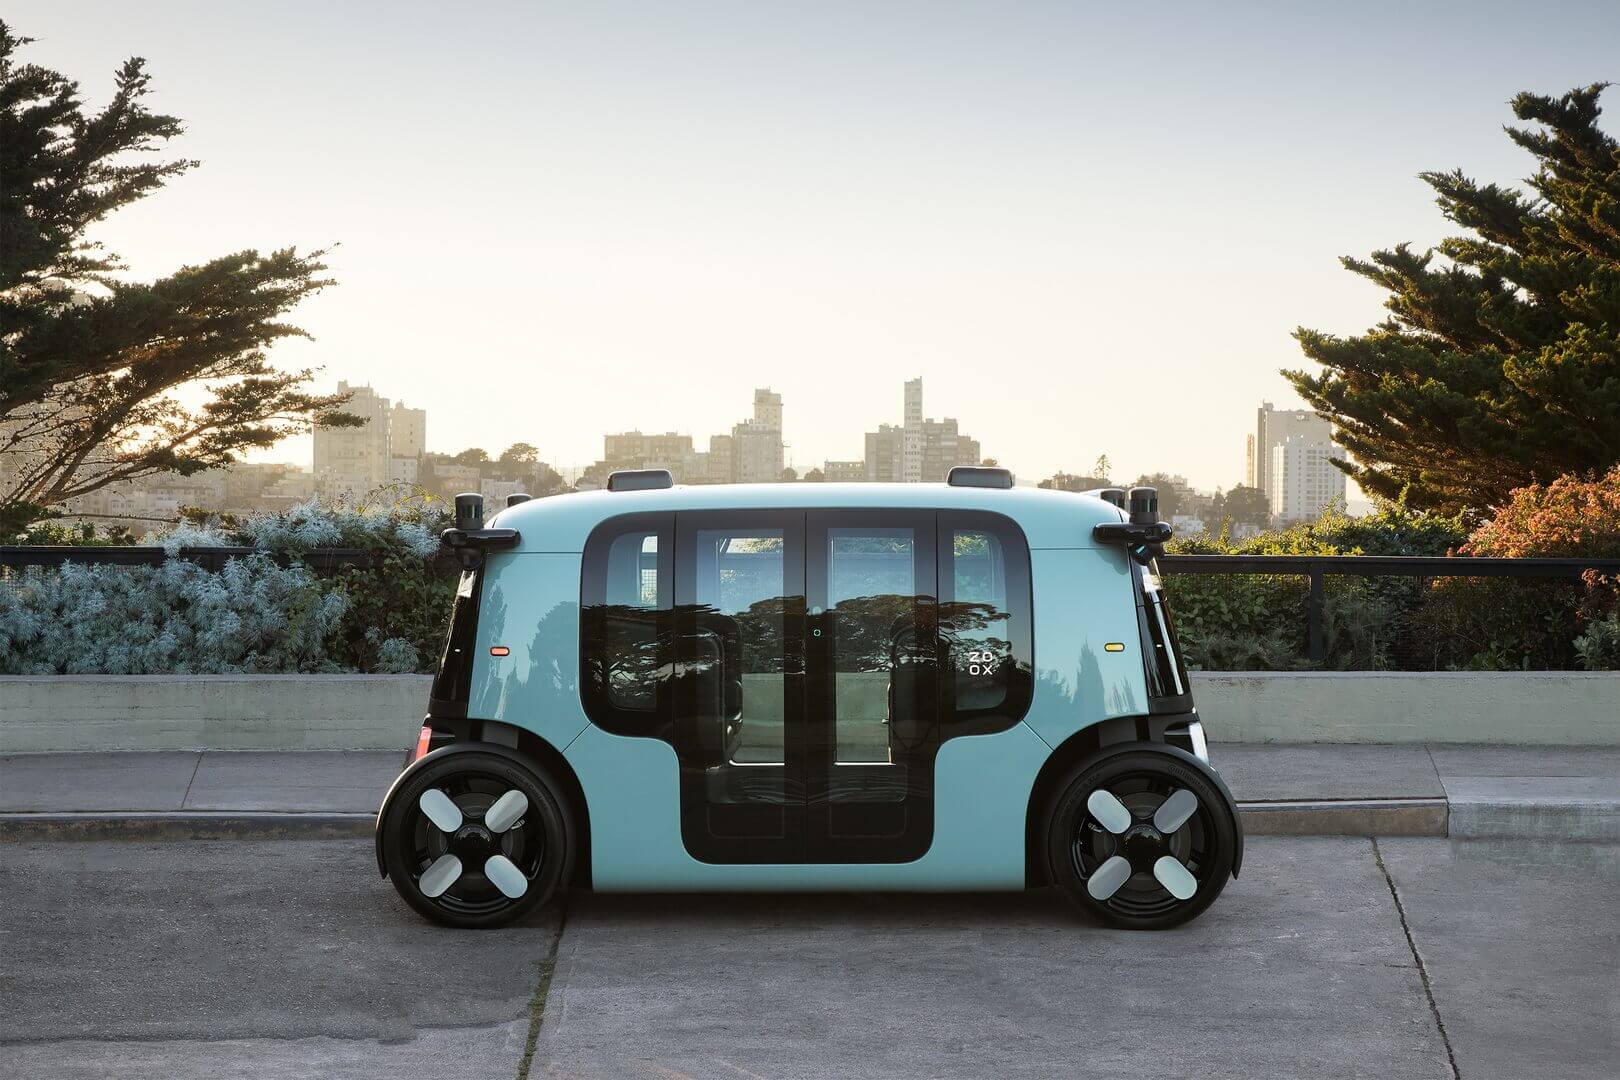 Стартап автономных транспортных средств Zoox от Amazon представил электромобиль-роботакси без руля, который может работать без подзарядки 16 часов